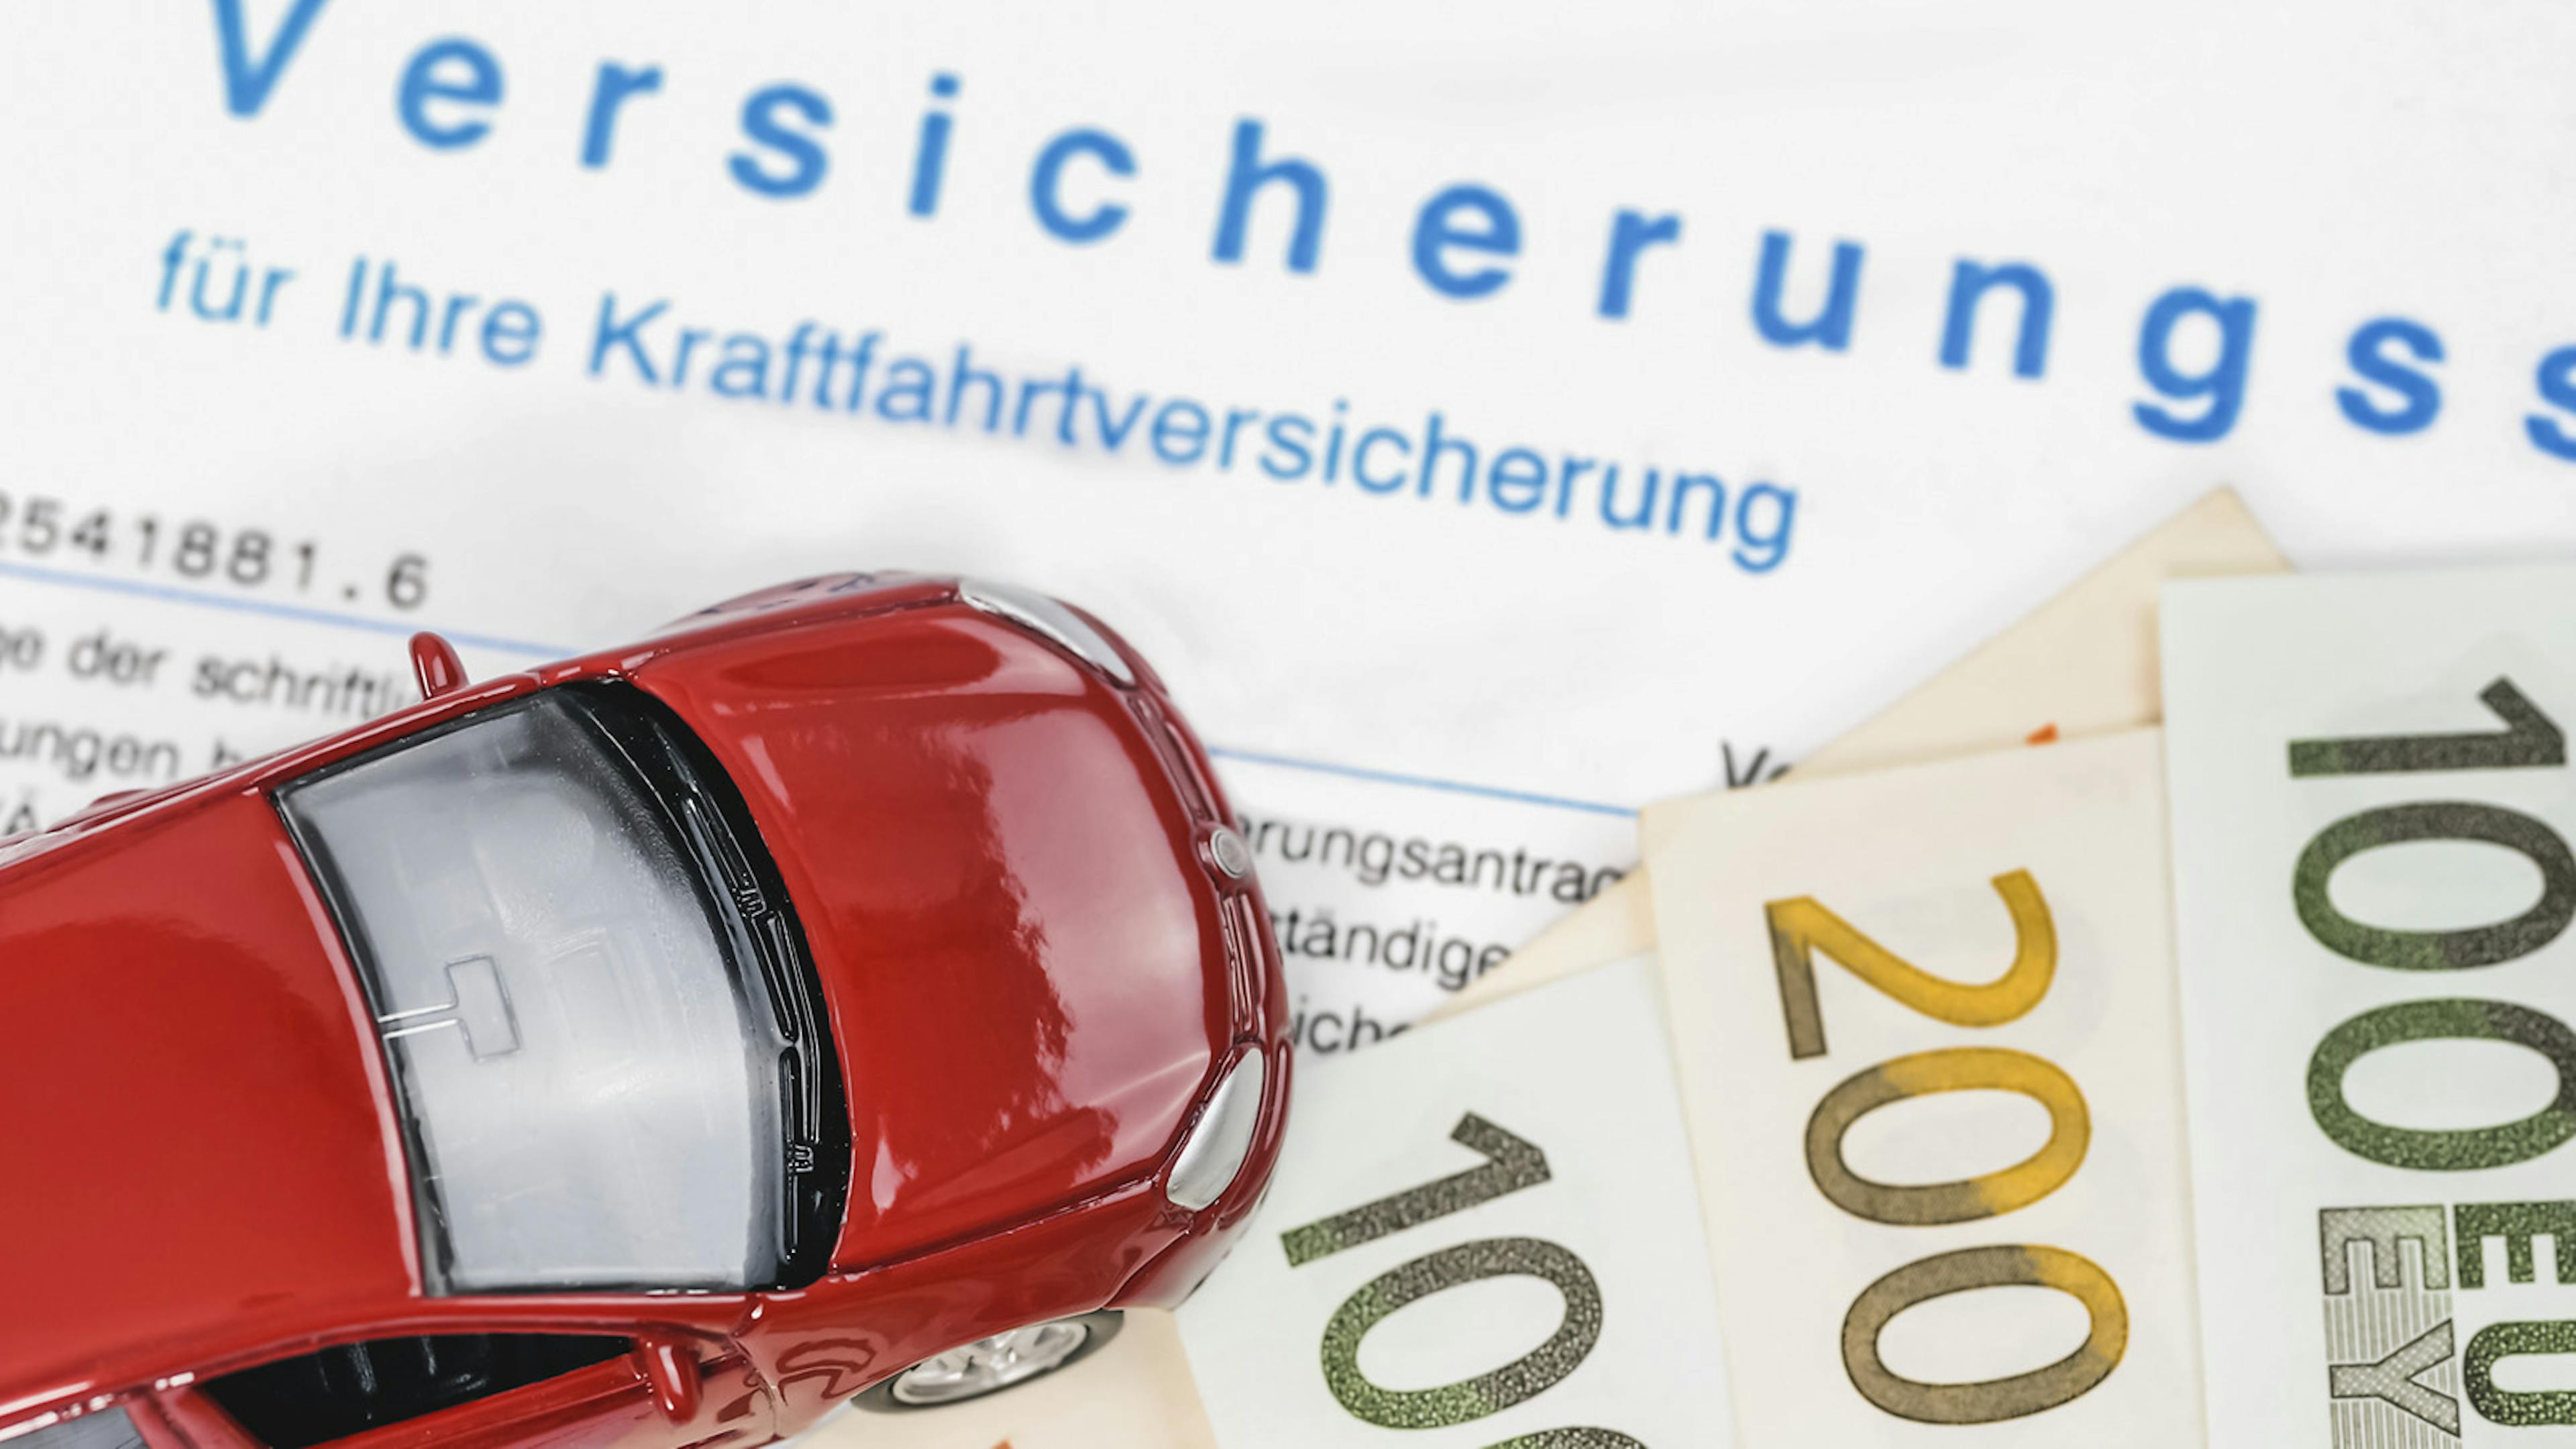 Ein rotes Modellauto steht auf einem Geldschein und einem Blatt Papier, auf dem in blauer Schrift "Versicherungsschein" steht.